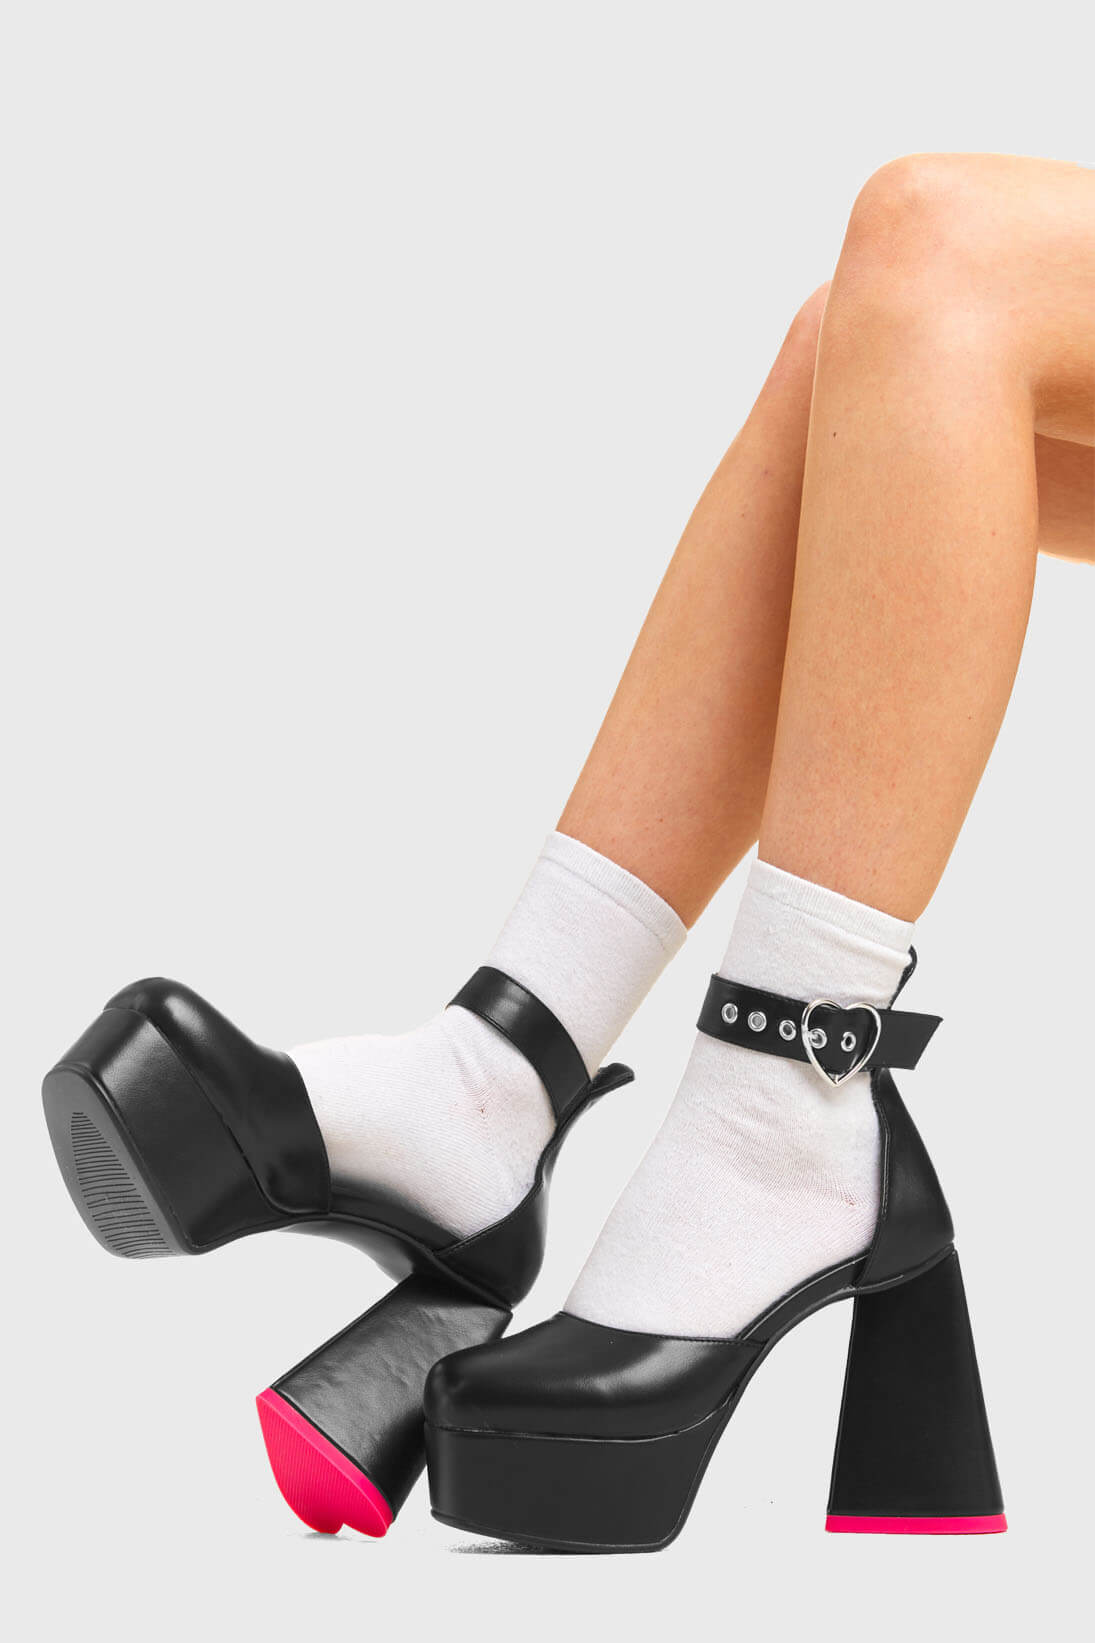 Lace Platform Heels|elegant Black Gladiator Heels - Peep Toe Platform Pumps  For Summer